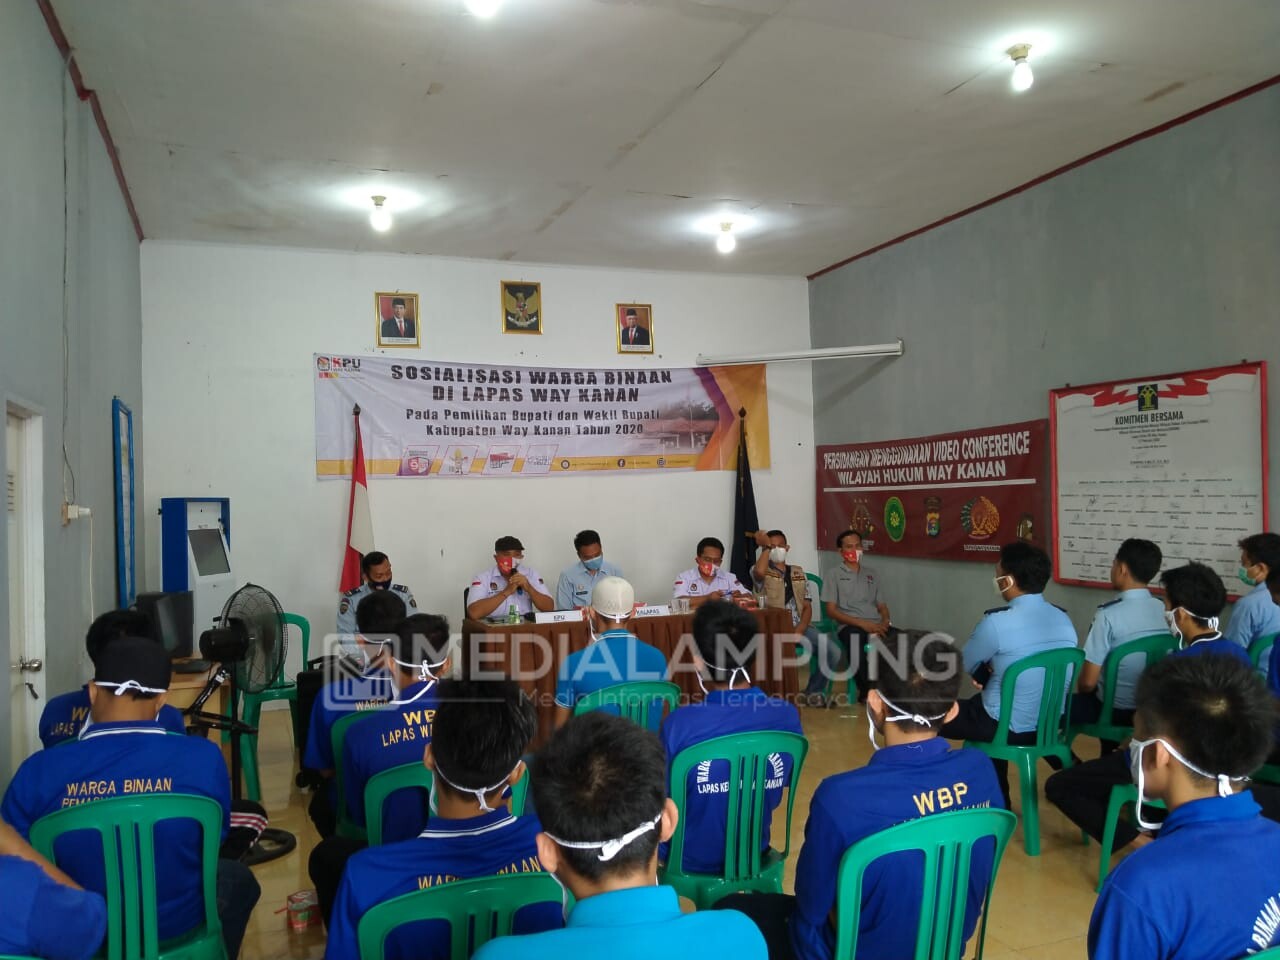 KPU Sosialisasikan Pilkada di Lapas Waykanan